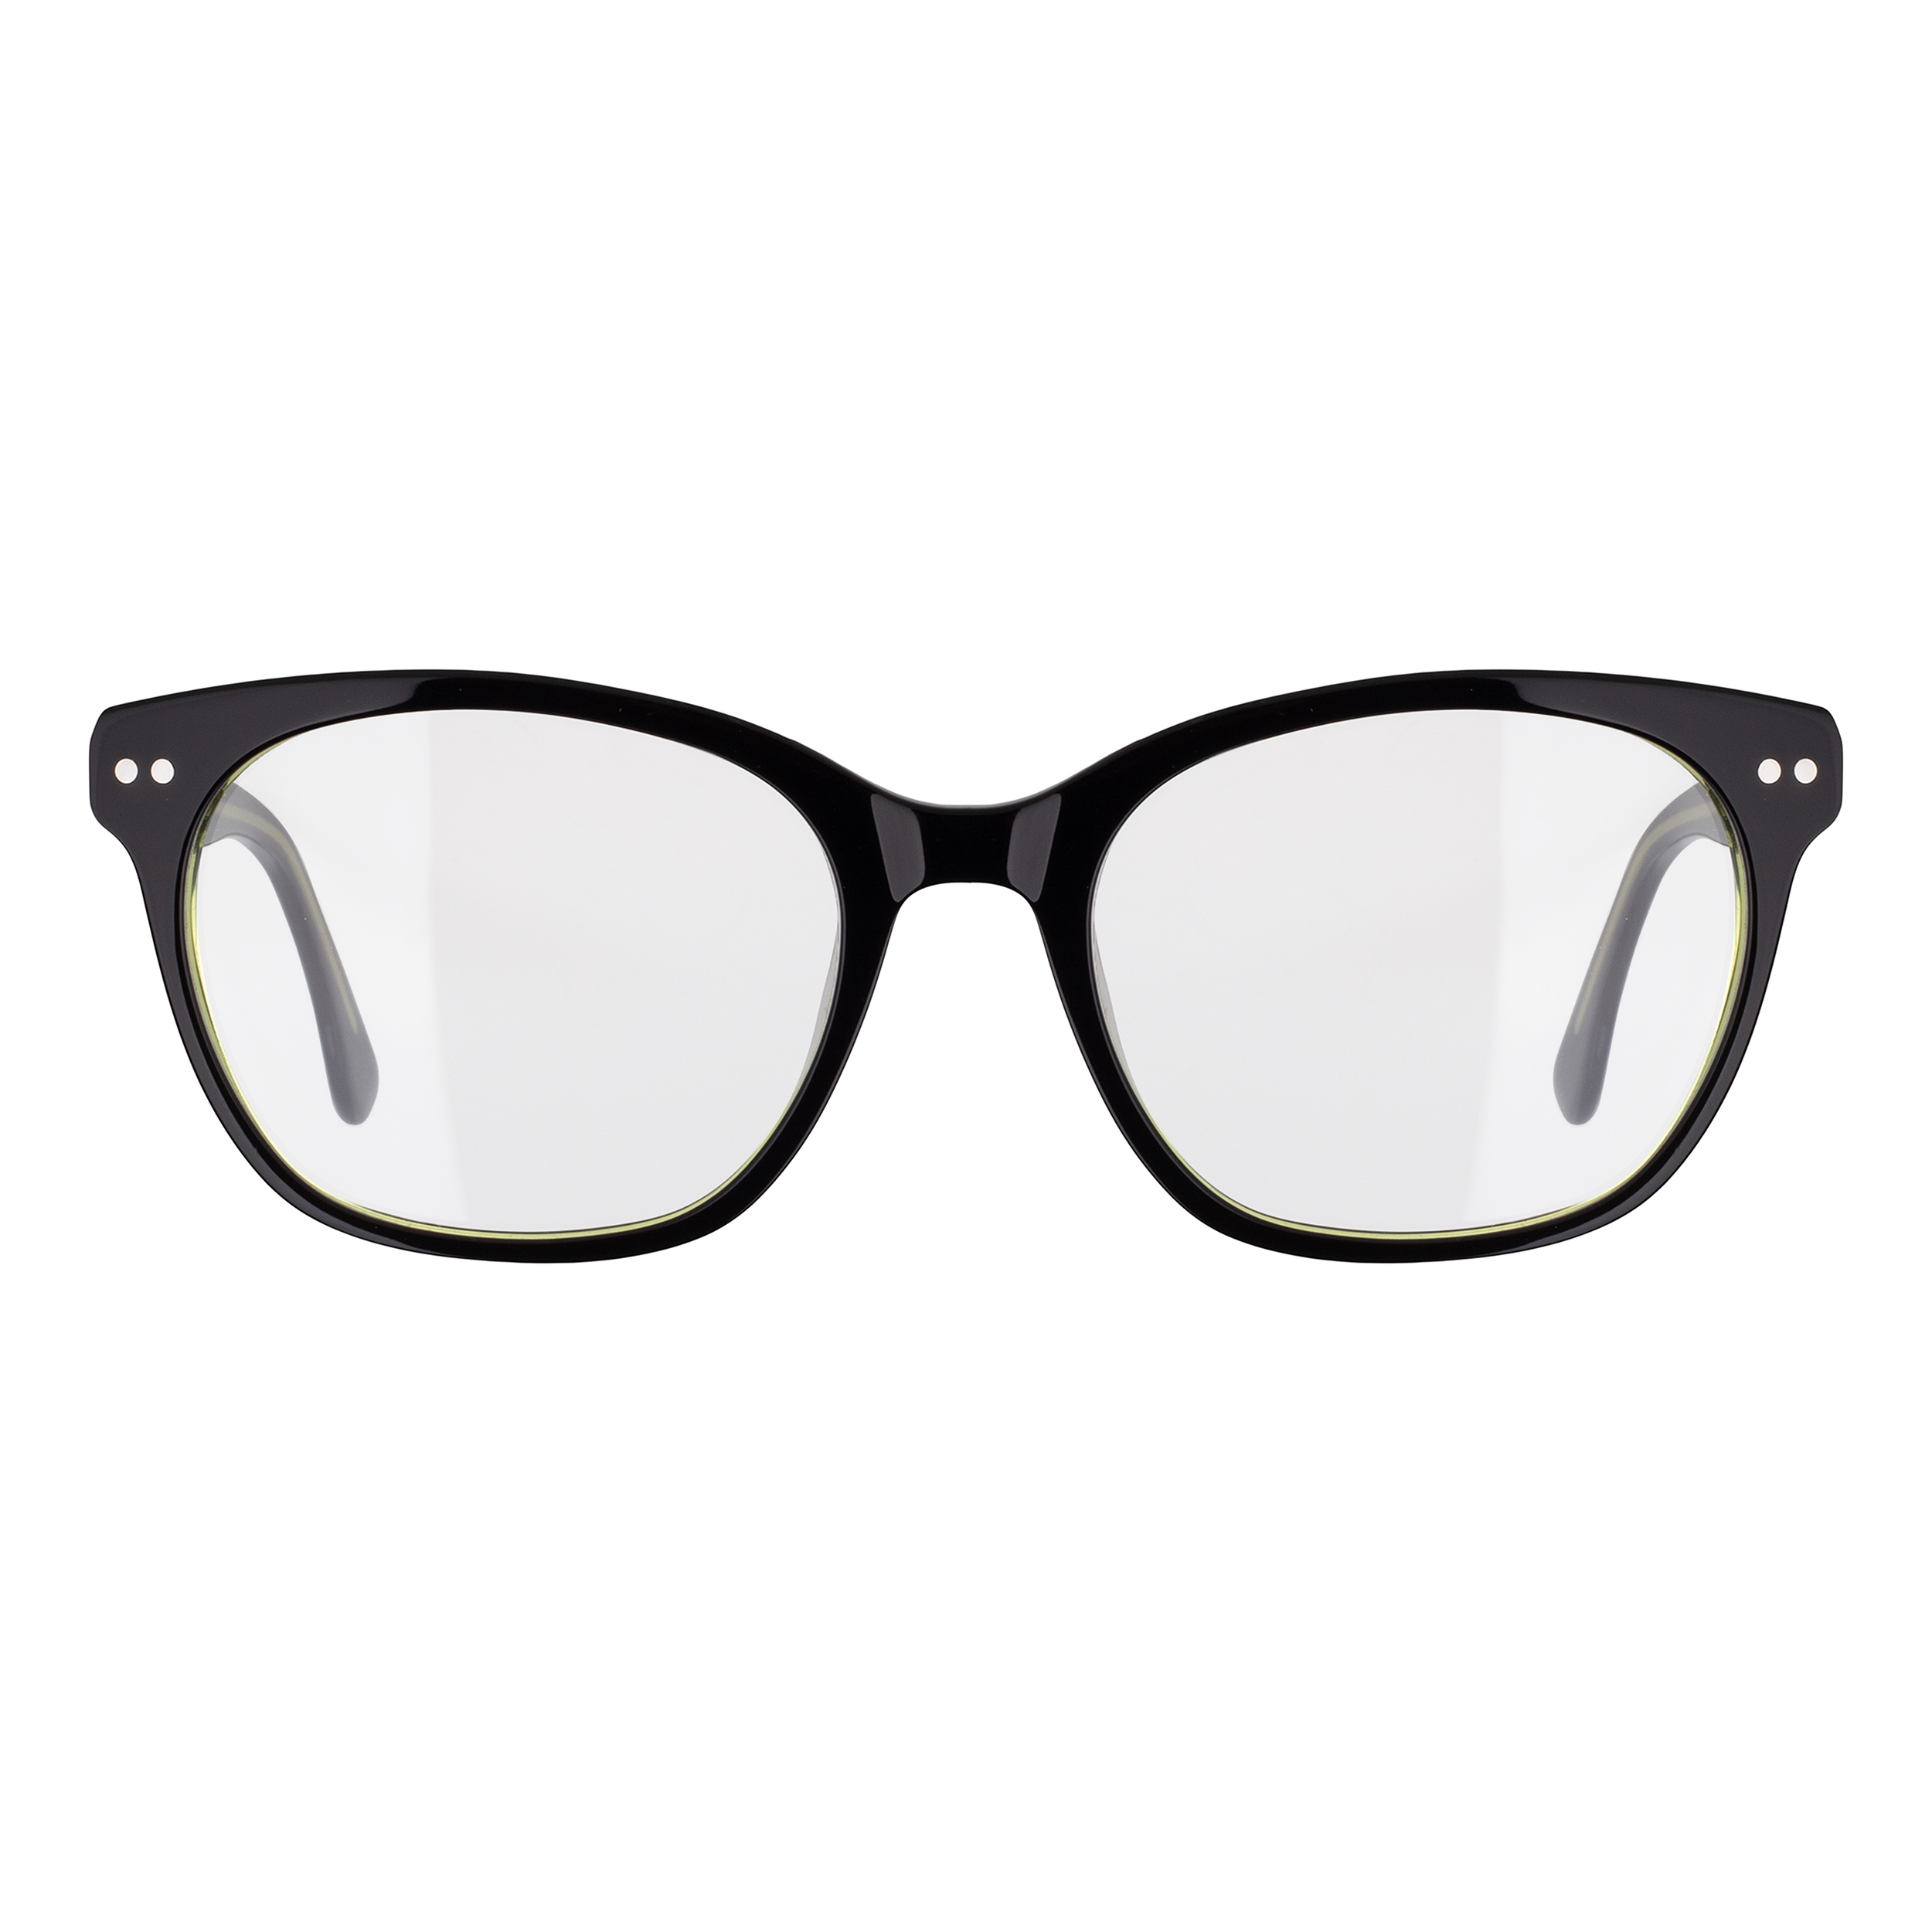 فریم عینک طبی مدل LG108C4 Acetate Multi Layer